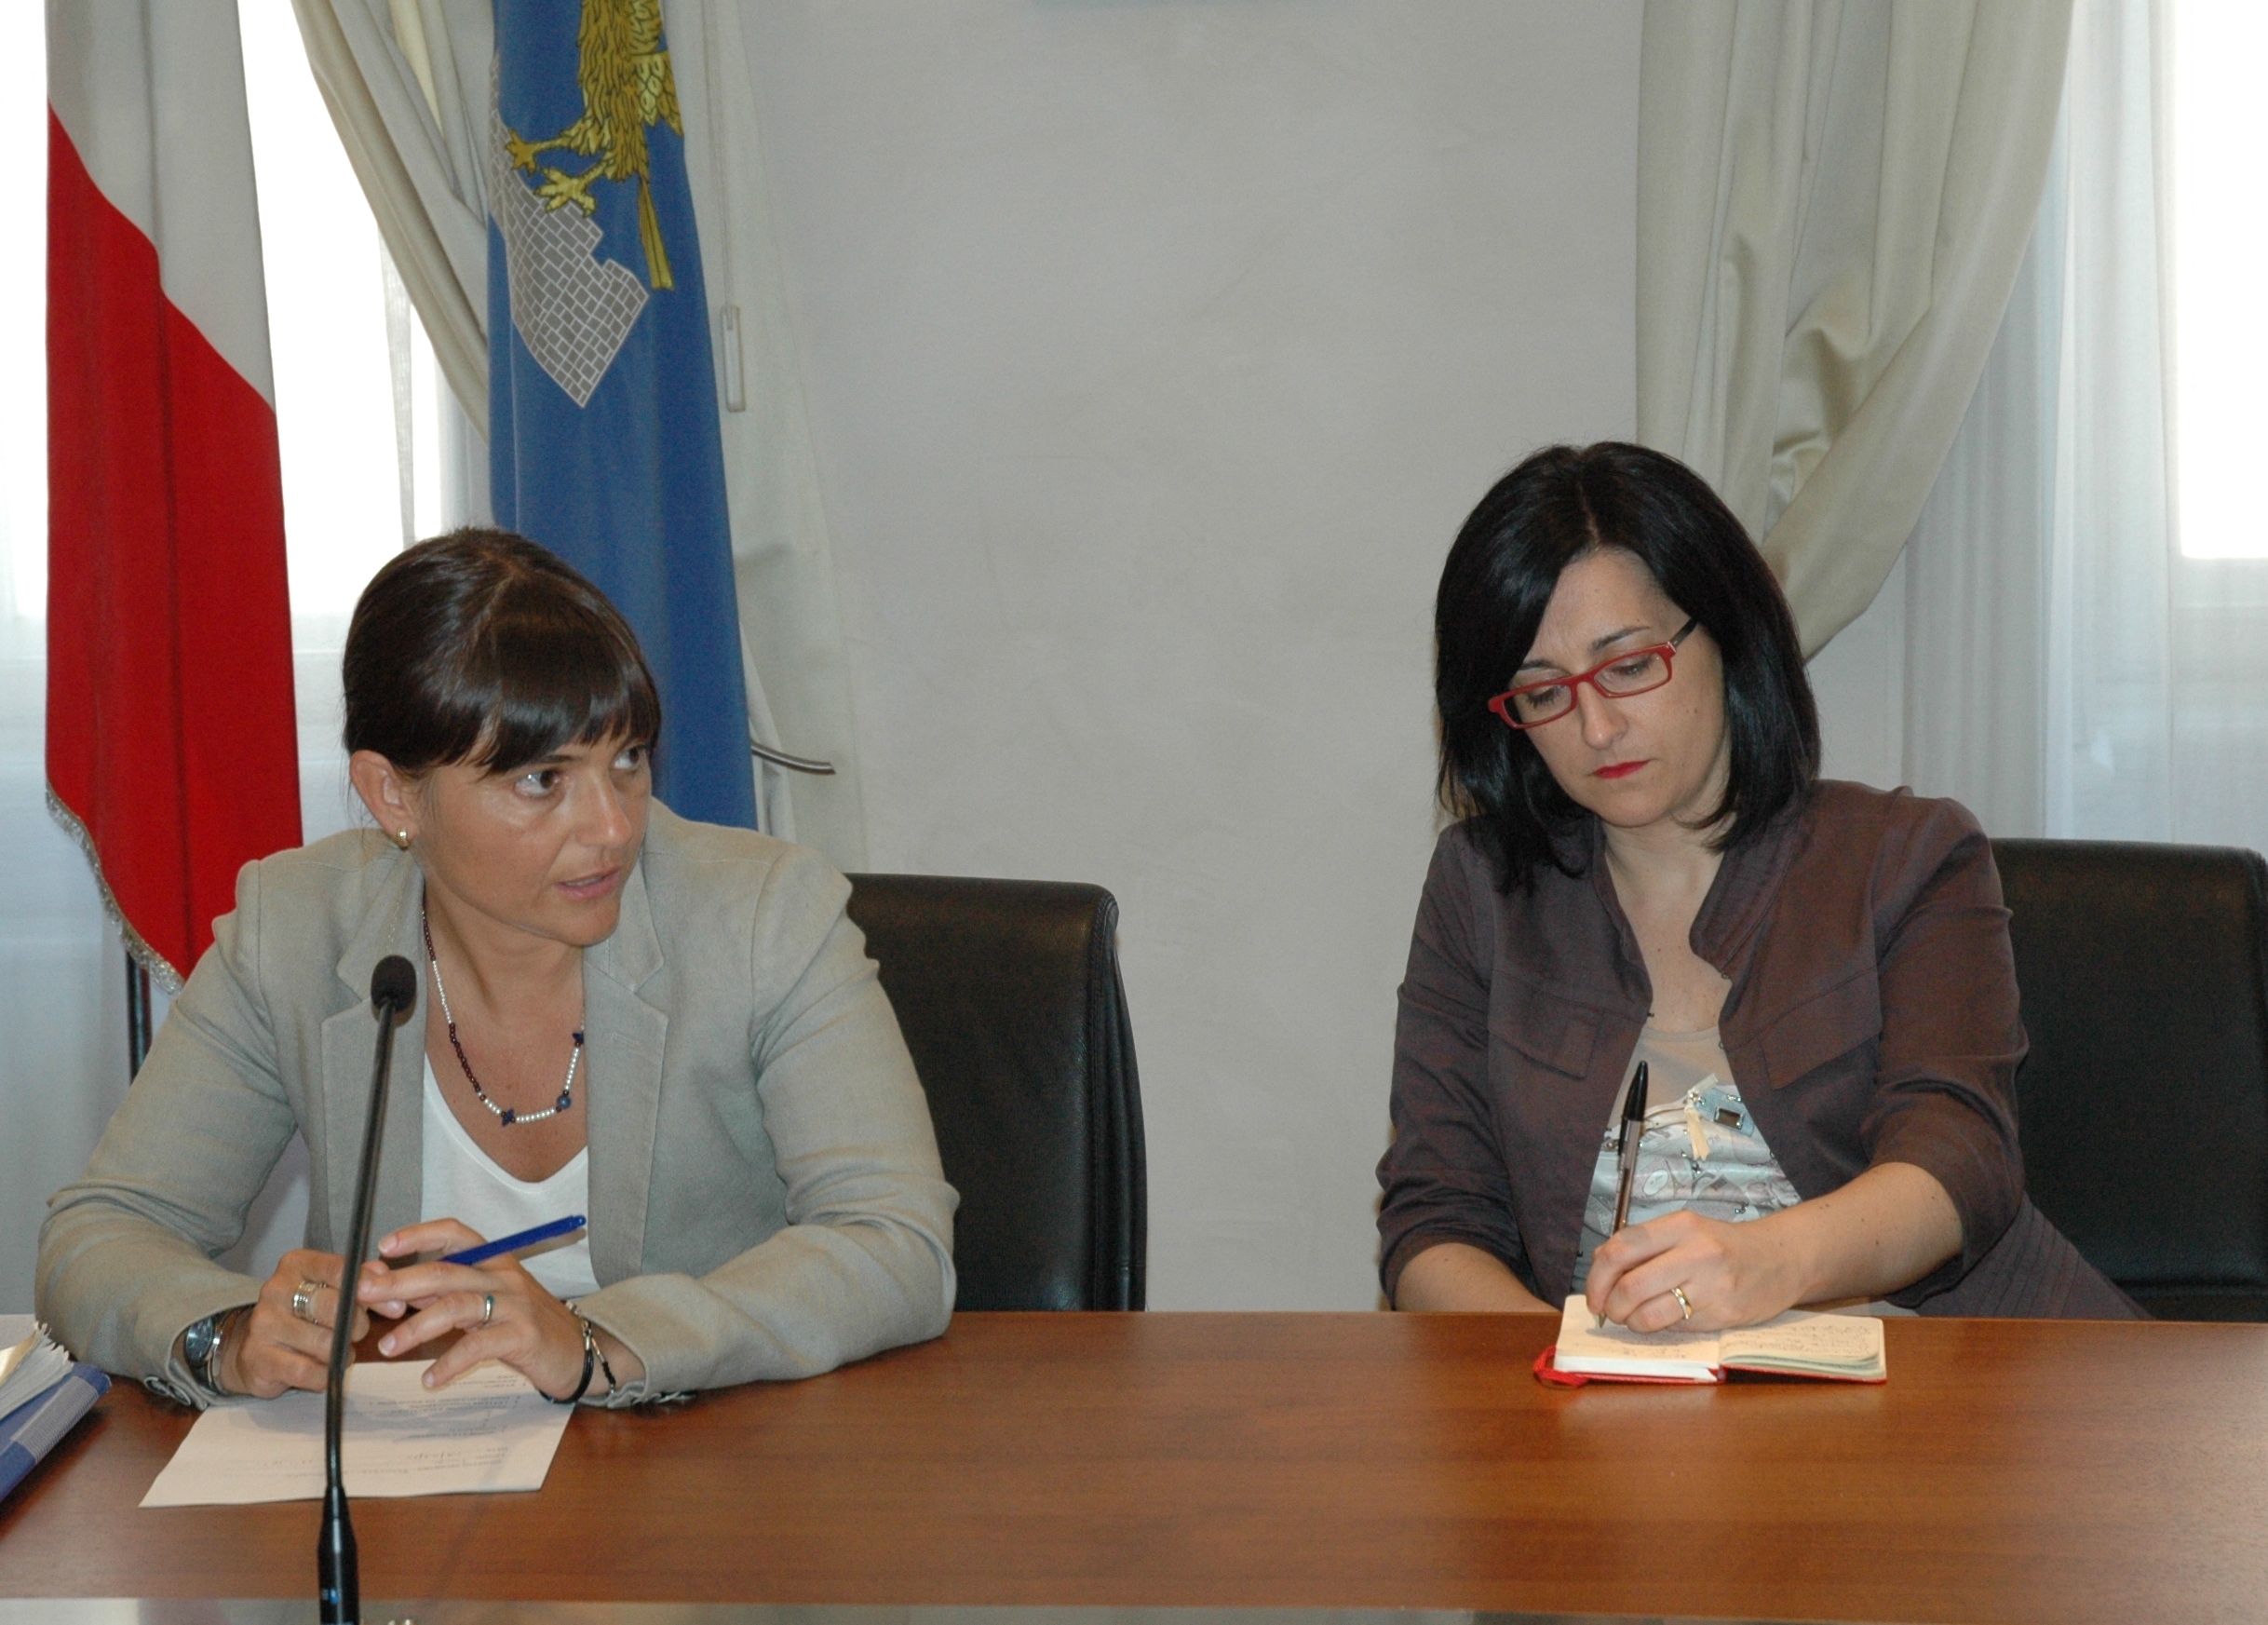 Debora Serracchiani (Presidente Friuli Venezia Giulia) e Sara Vito (assessore regionale all'Ambiente) durante l'incontro sulla Ferriera di Servola (TS). (Trieste, 08/08/13)
